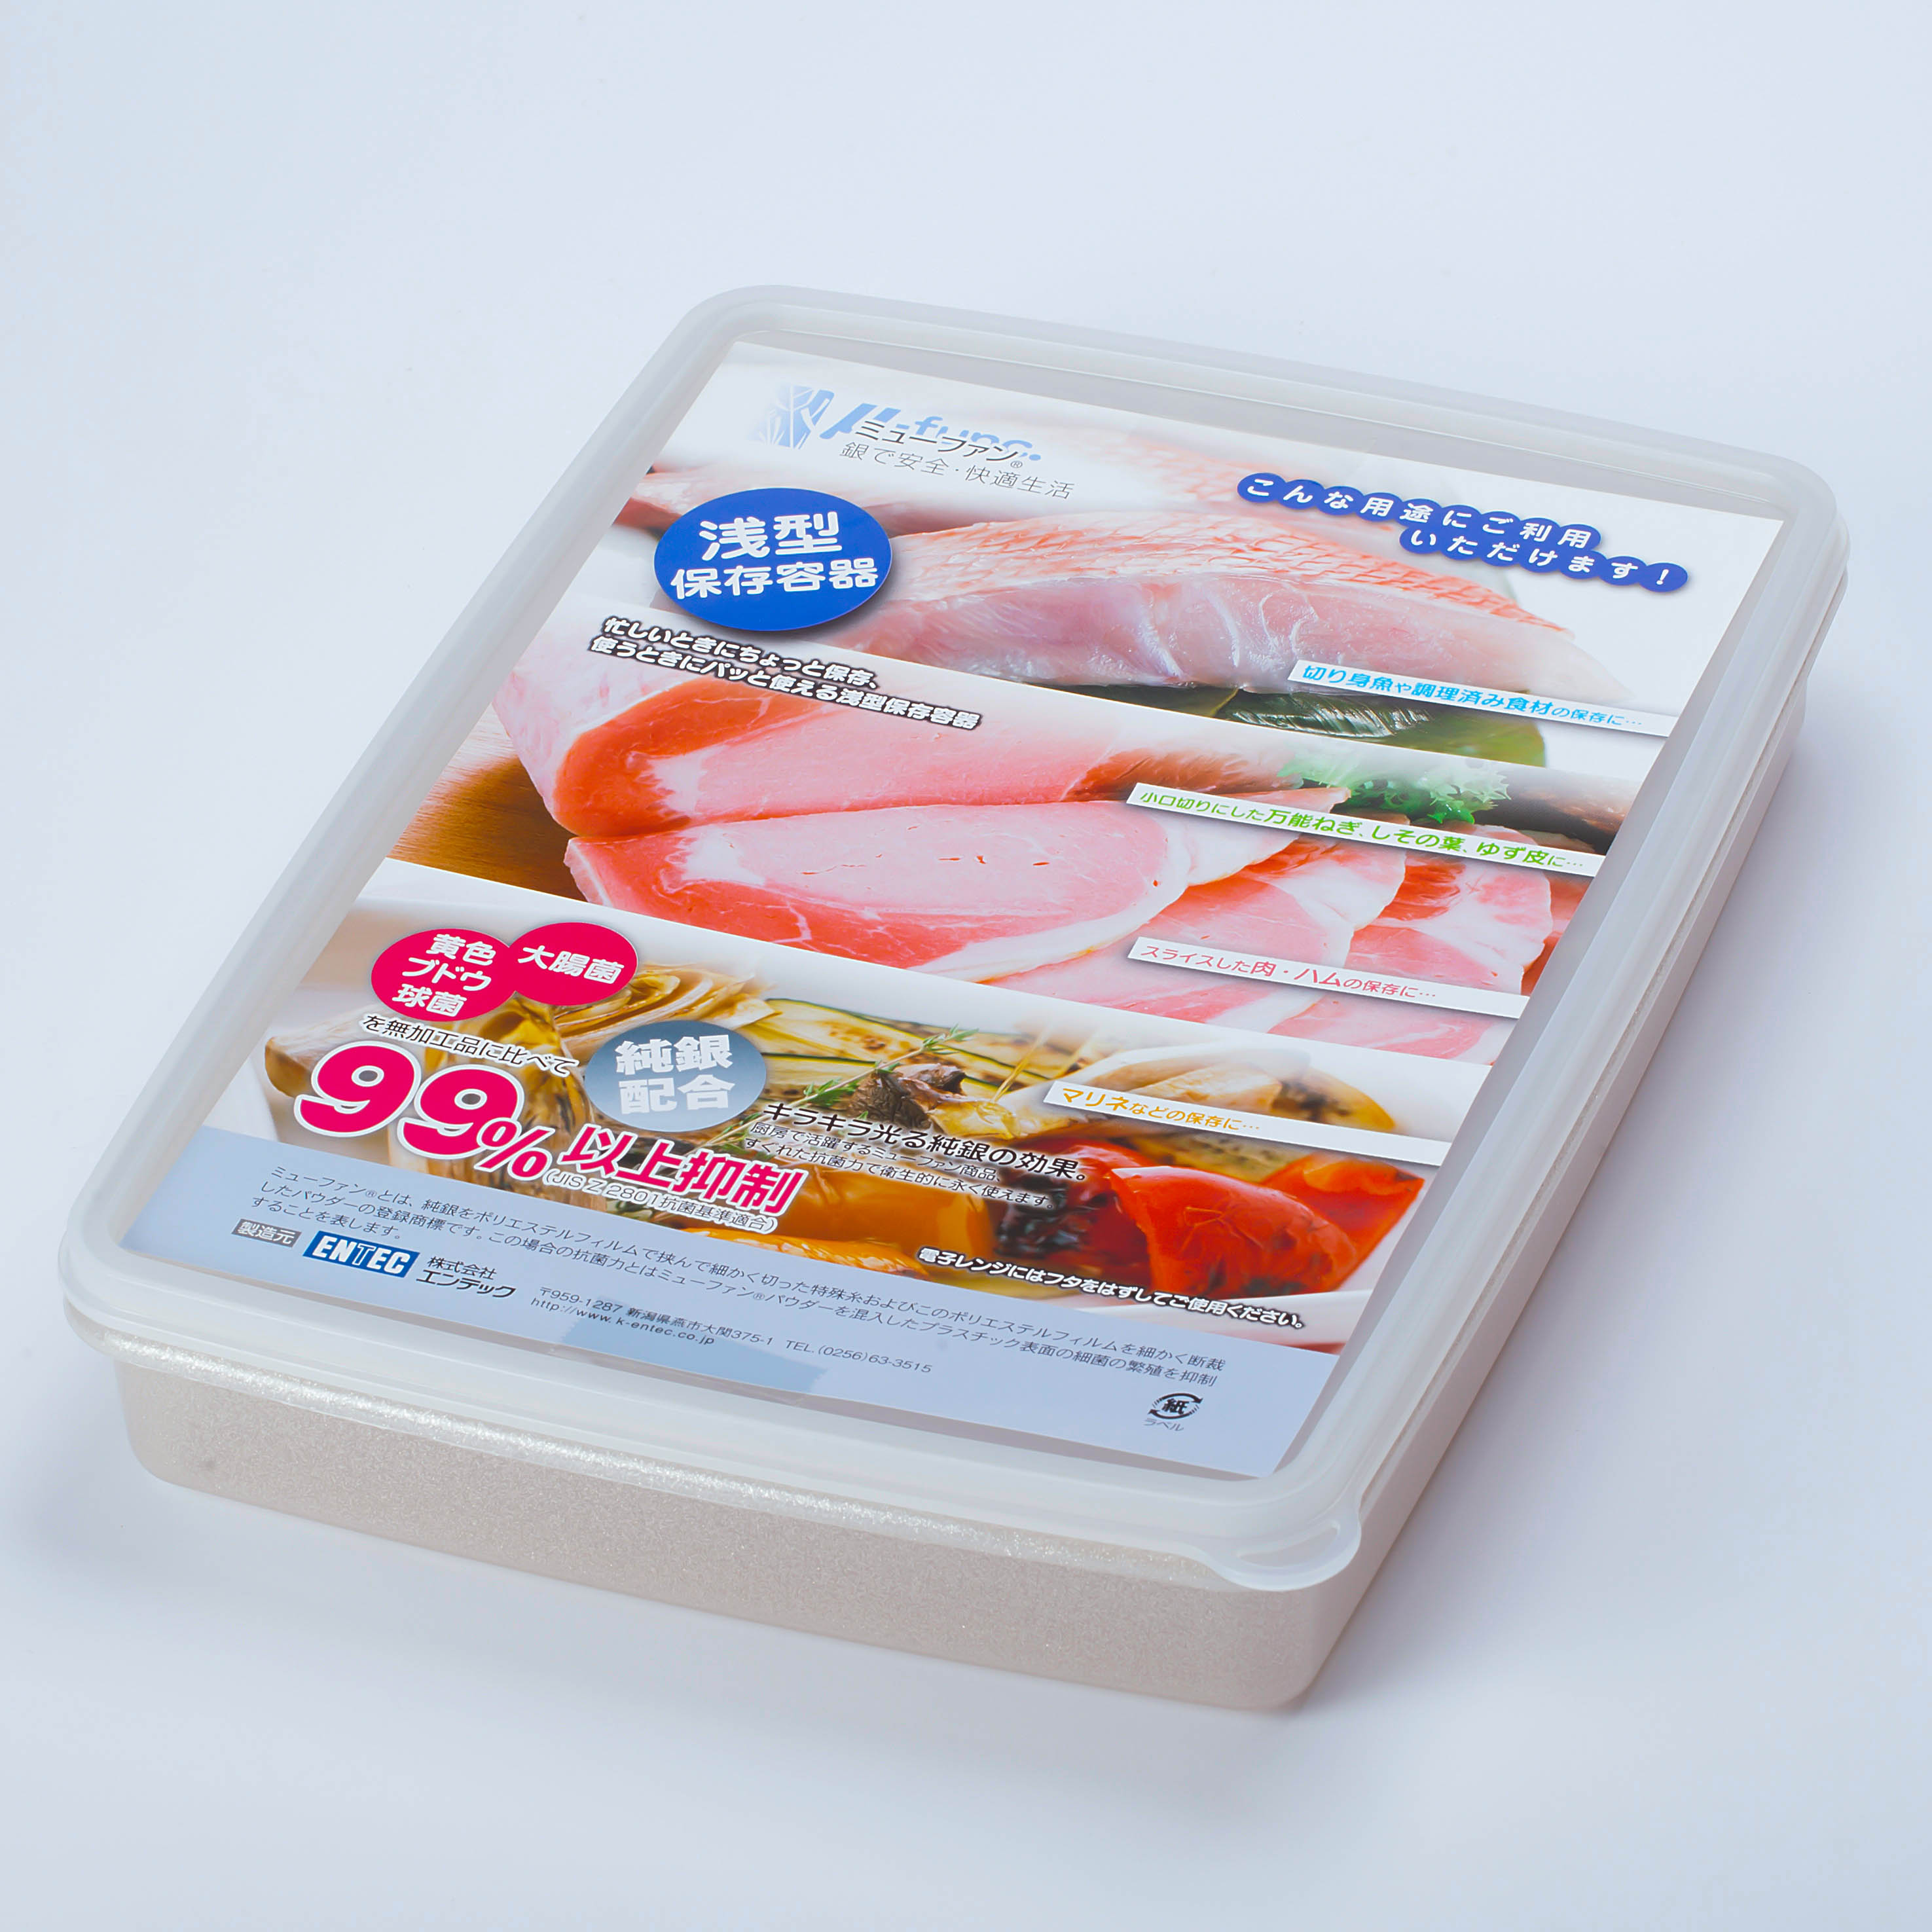 日本製mju-func®妙屋房銀纖維銀離子薄型抗菌保鮮盒T4-M132